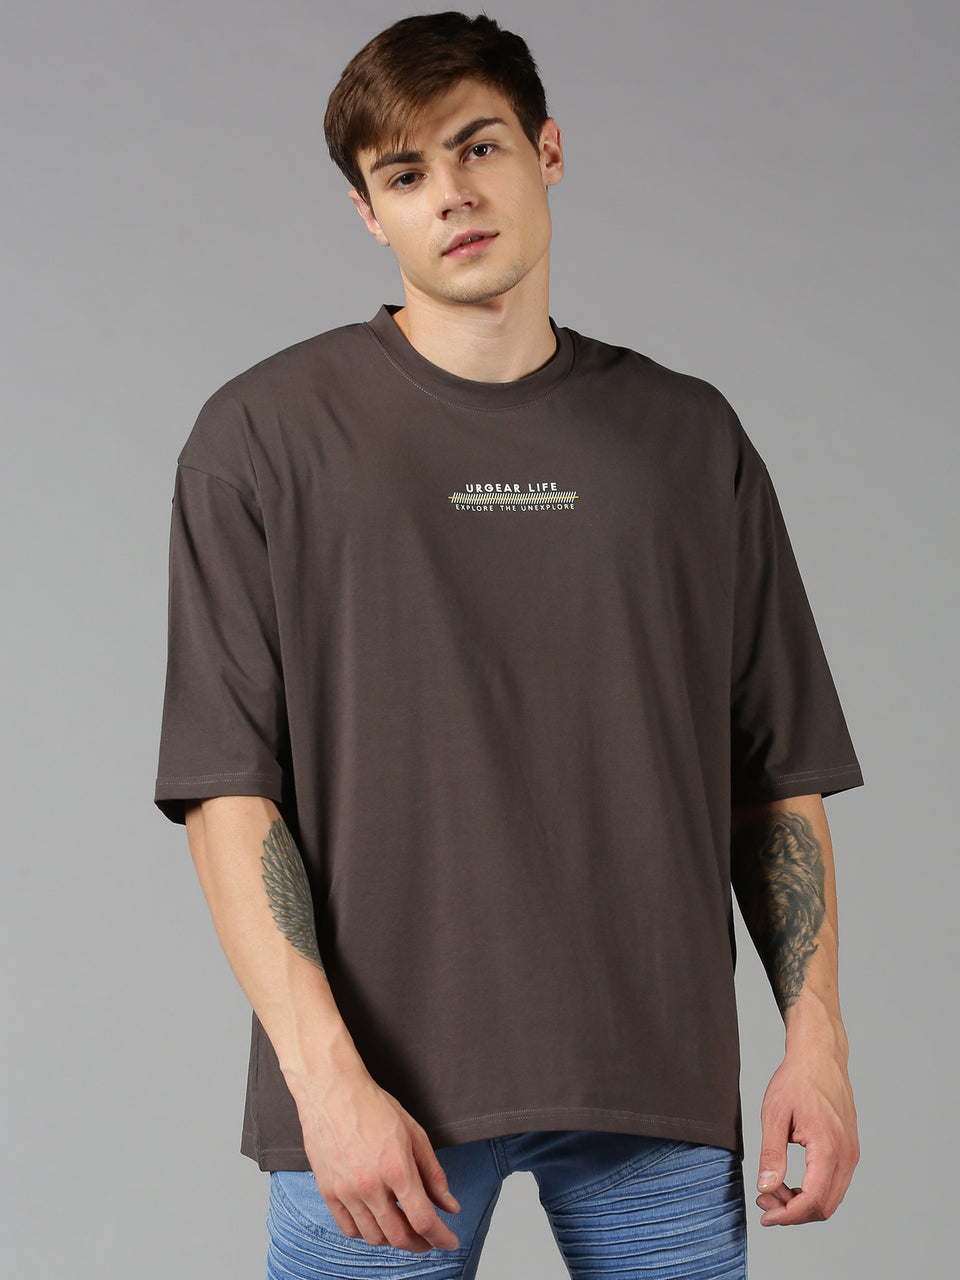 Sami Zayn Black T-Shirt | Swag Shirts